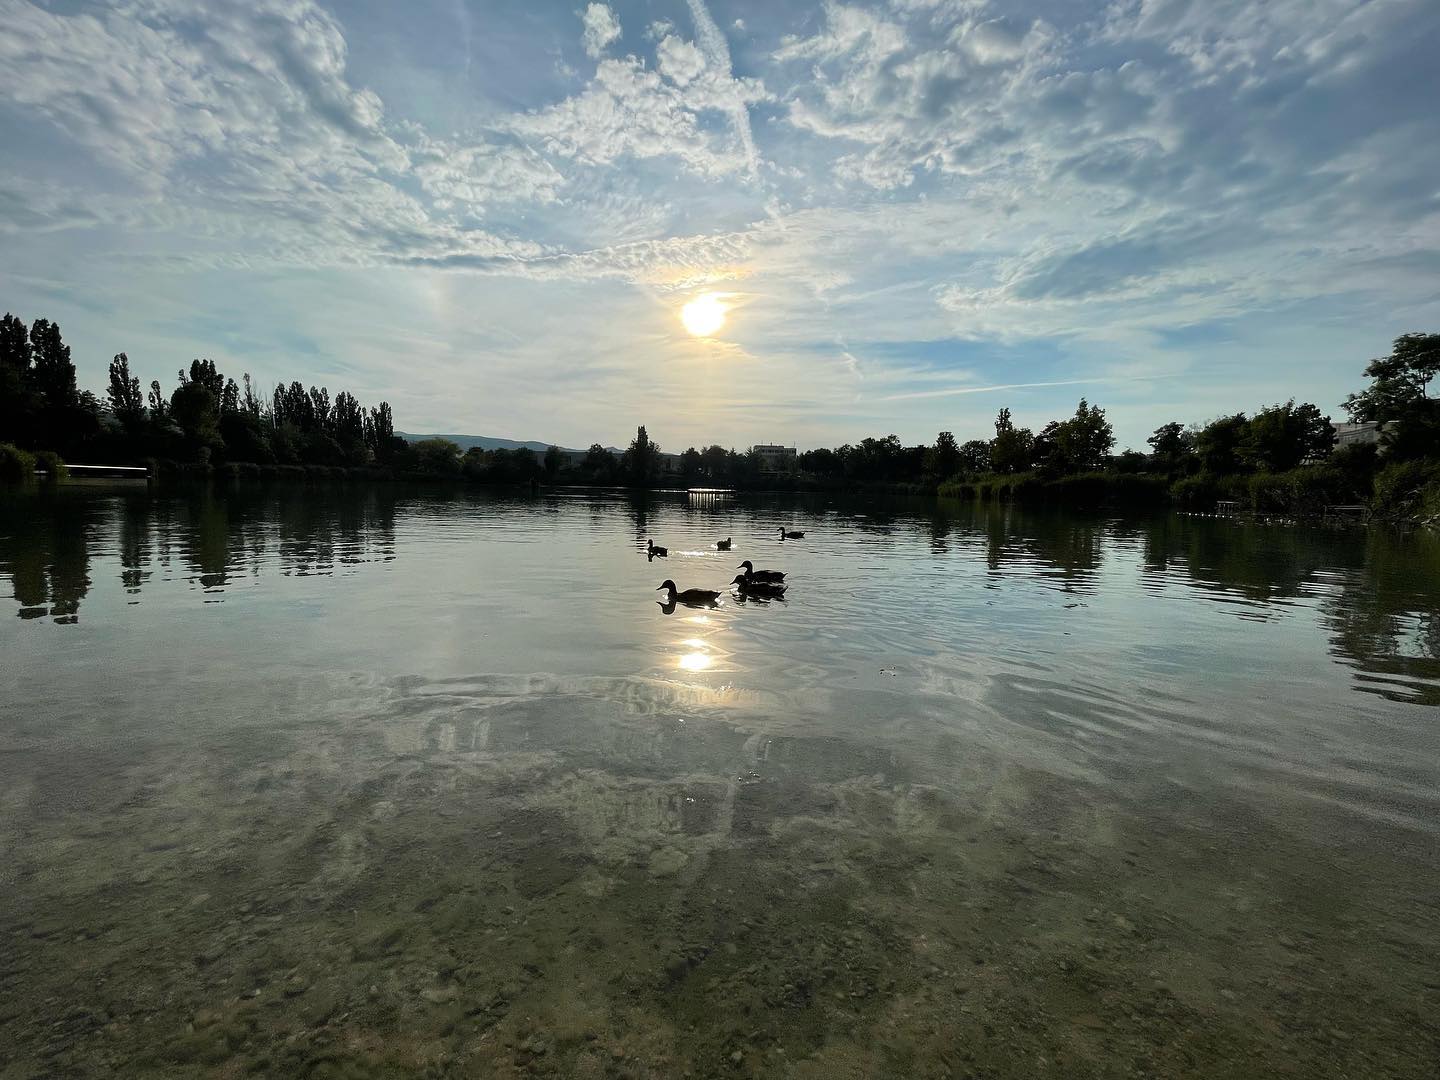 Zur Ruhe kommen und durchatmen. - Calm down and take a breath. #wasser #teich #schwimmen #jetzt #now #lake #swimming #natur #sundown #sunset #sonnenuntergang #enten #ducks #nofilter #iphone12promax